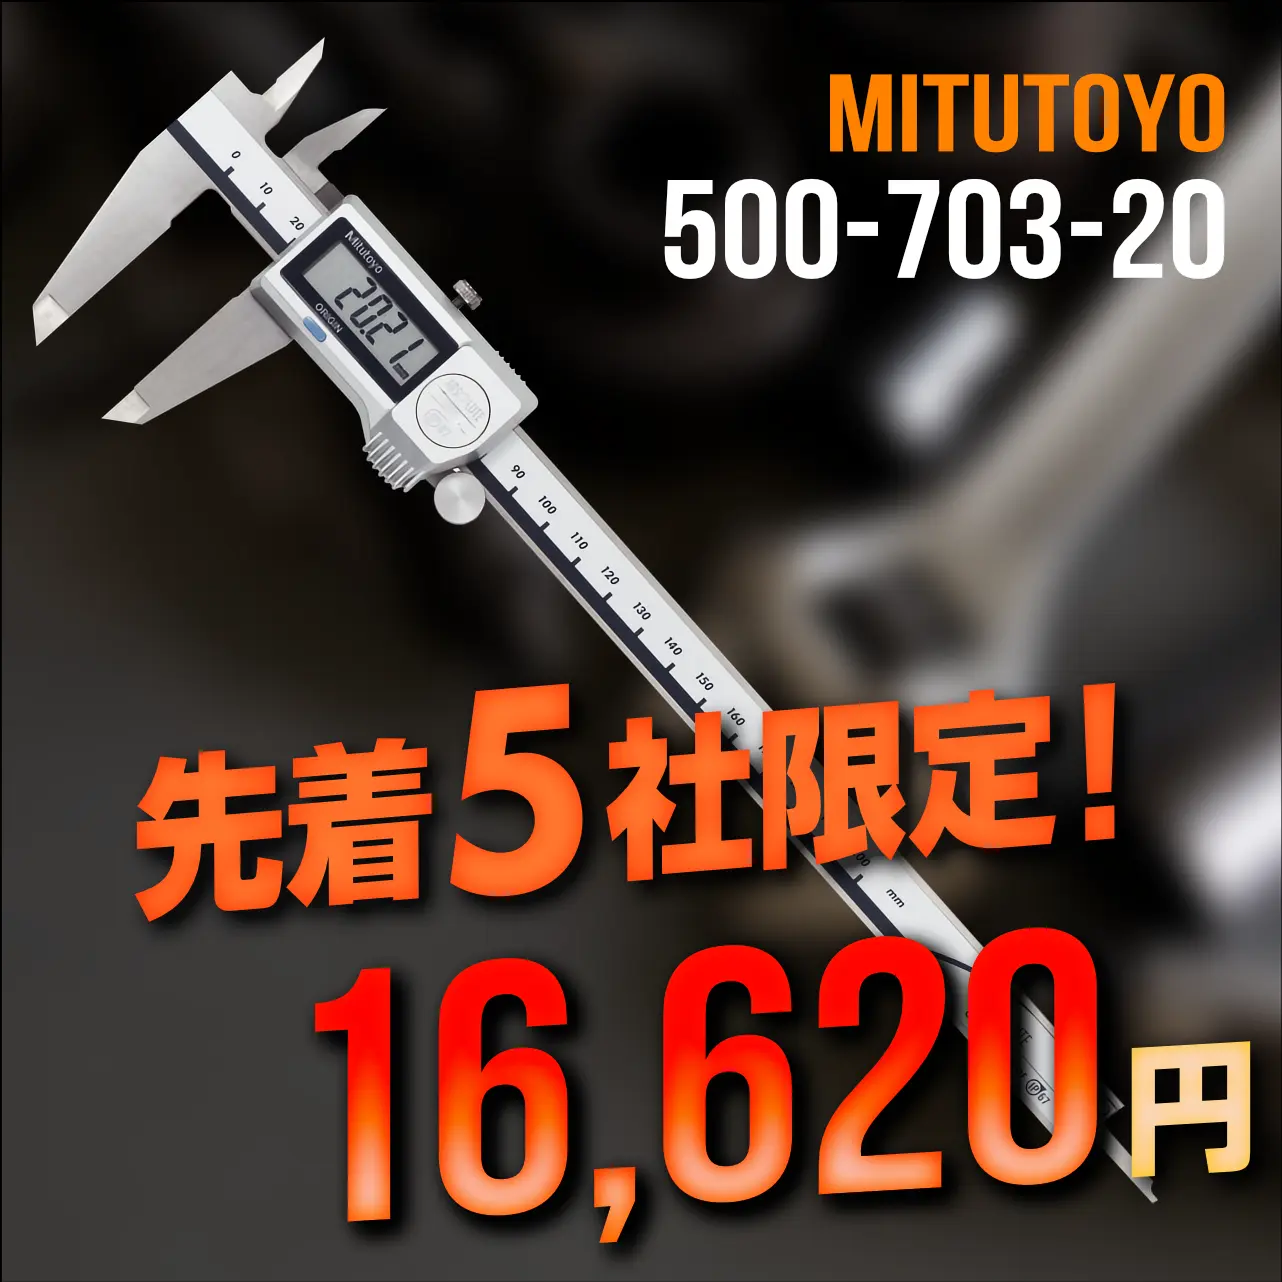 mitutoyo ミツトヨ 大特価 500-703-20 クーラントプルーフキャリパ